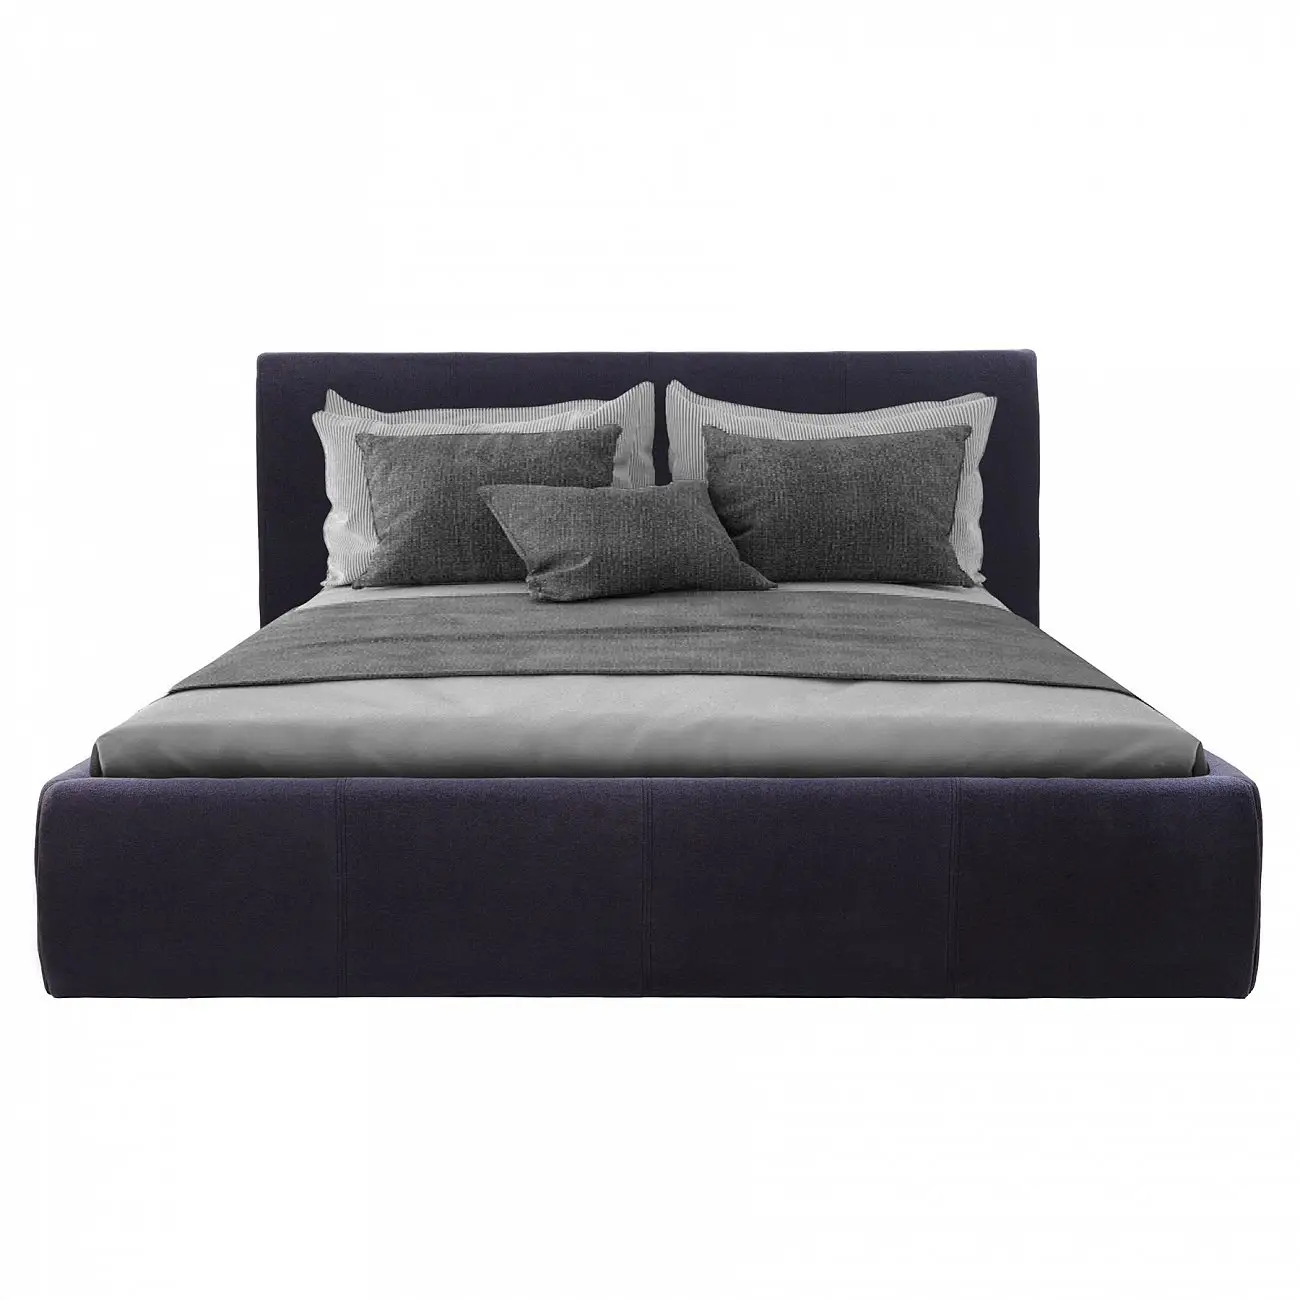 Кровать двуспальная с мягкой спинкой 180х200 см черная Amy Bed Р